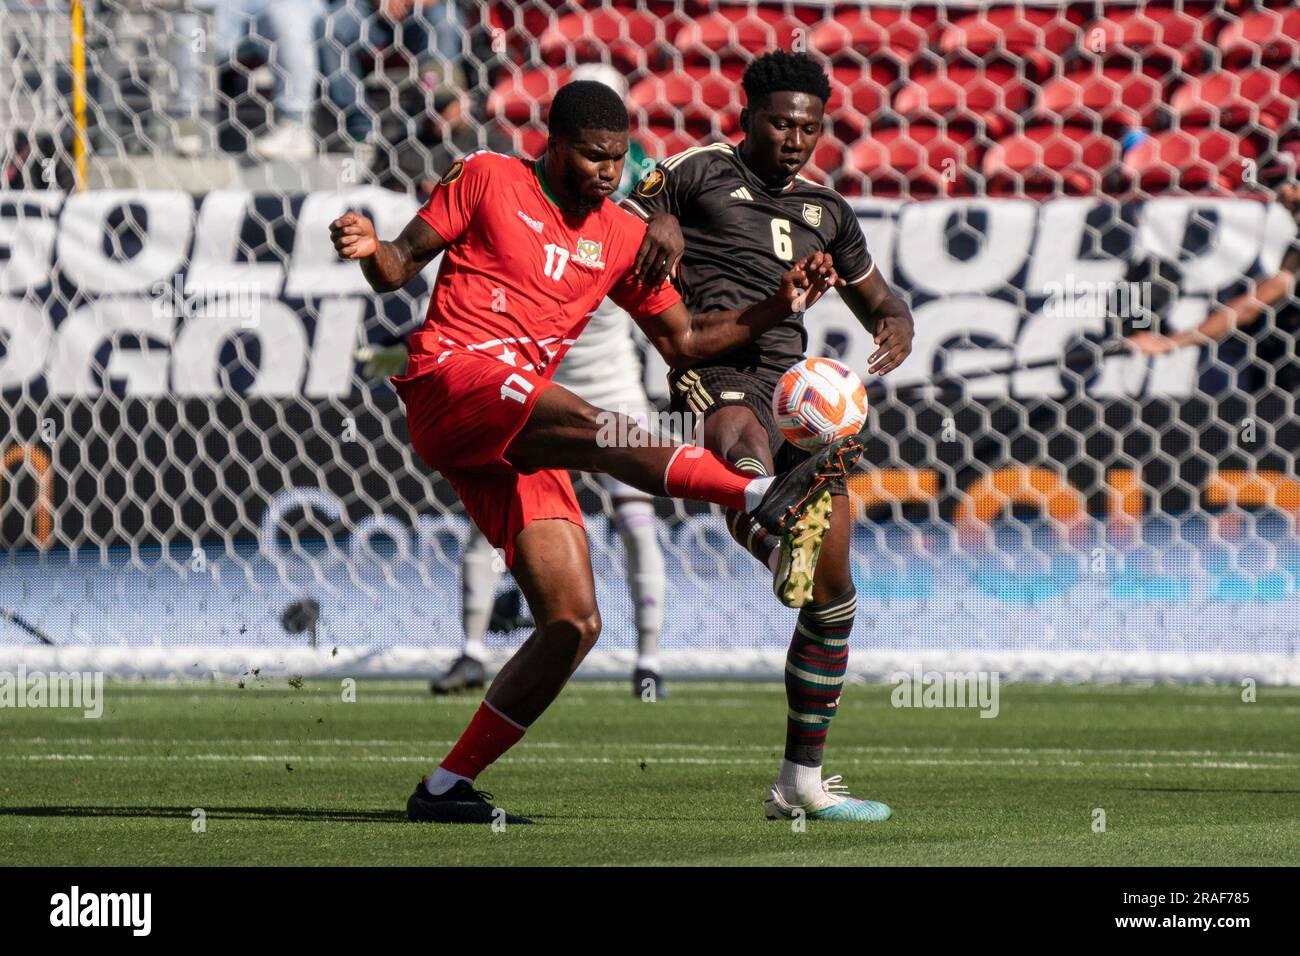 Saint Kitts e Nevis, l'attaccante Rowan Liburd (17) conquista possesso contro il difensore giamaicano di Shon Bernard (6) durante una partita di Gold Cup, domenica 2 luglio, Foto Stock